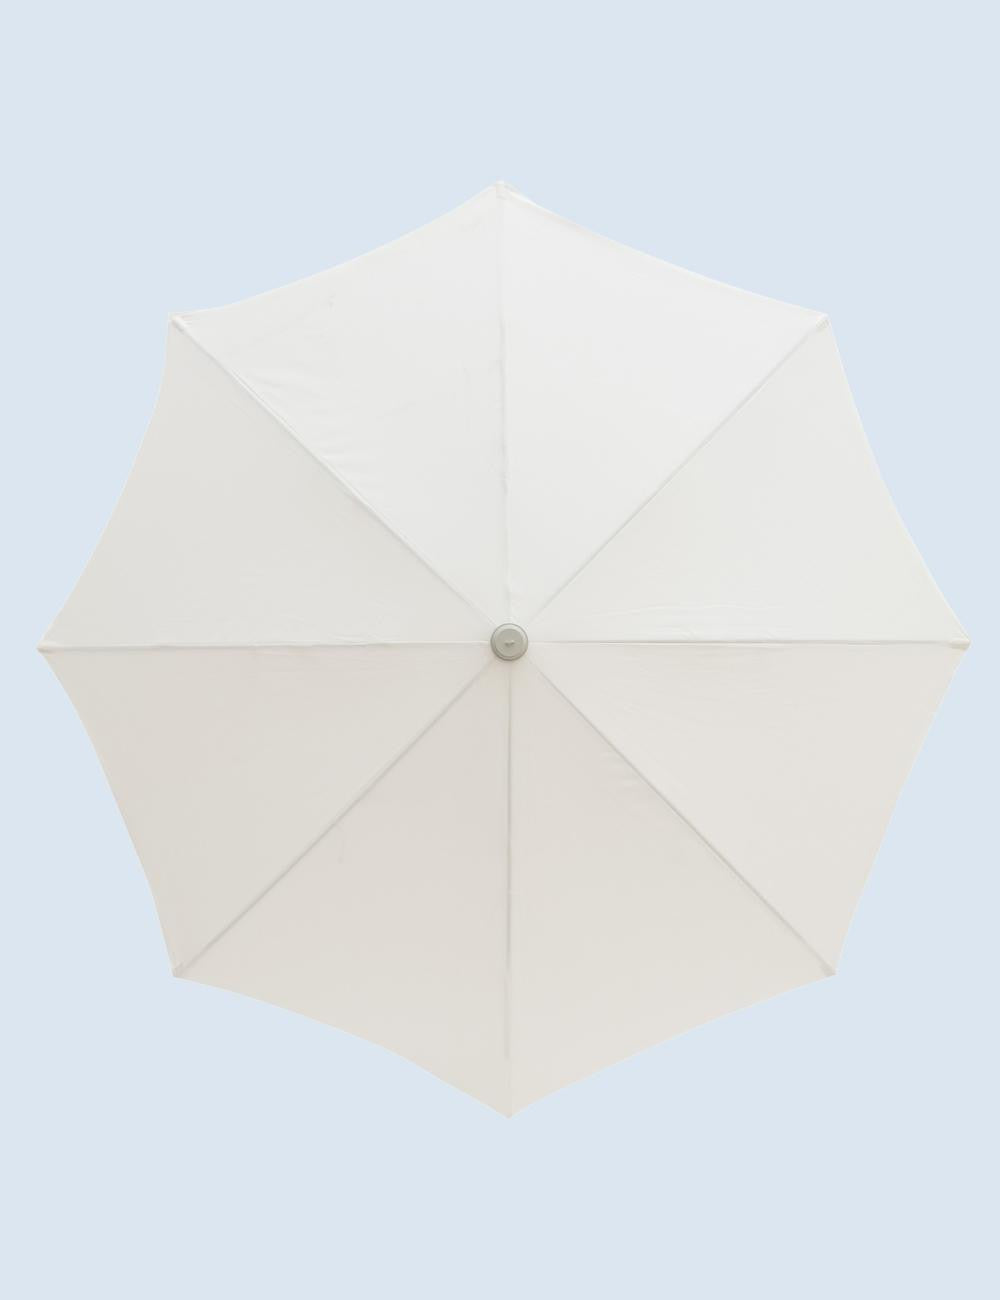 Antique White Parasol Umbrella